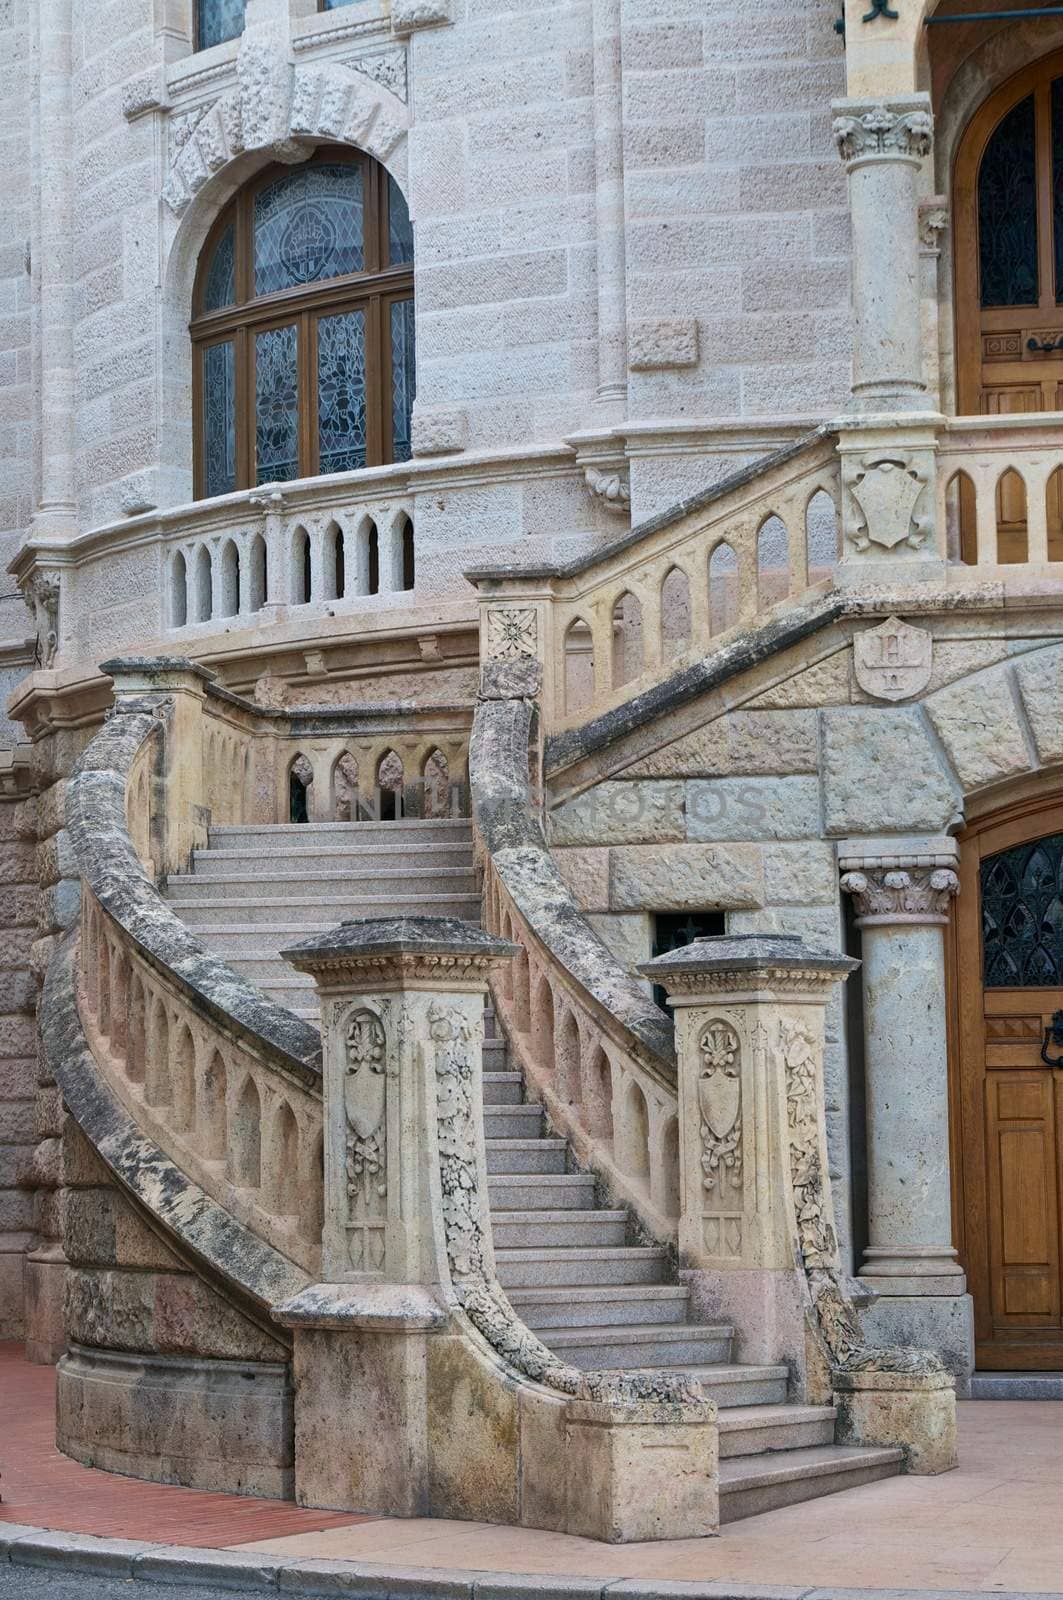 Monaco stair by dyvan